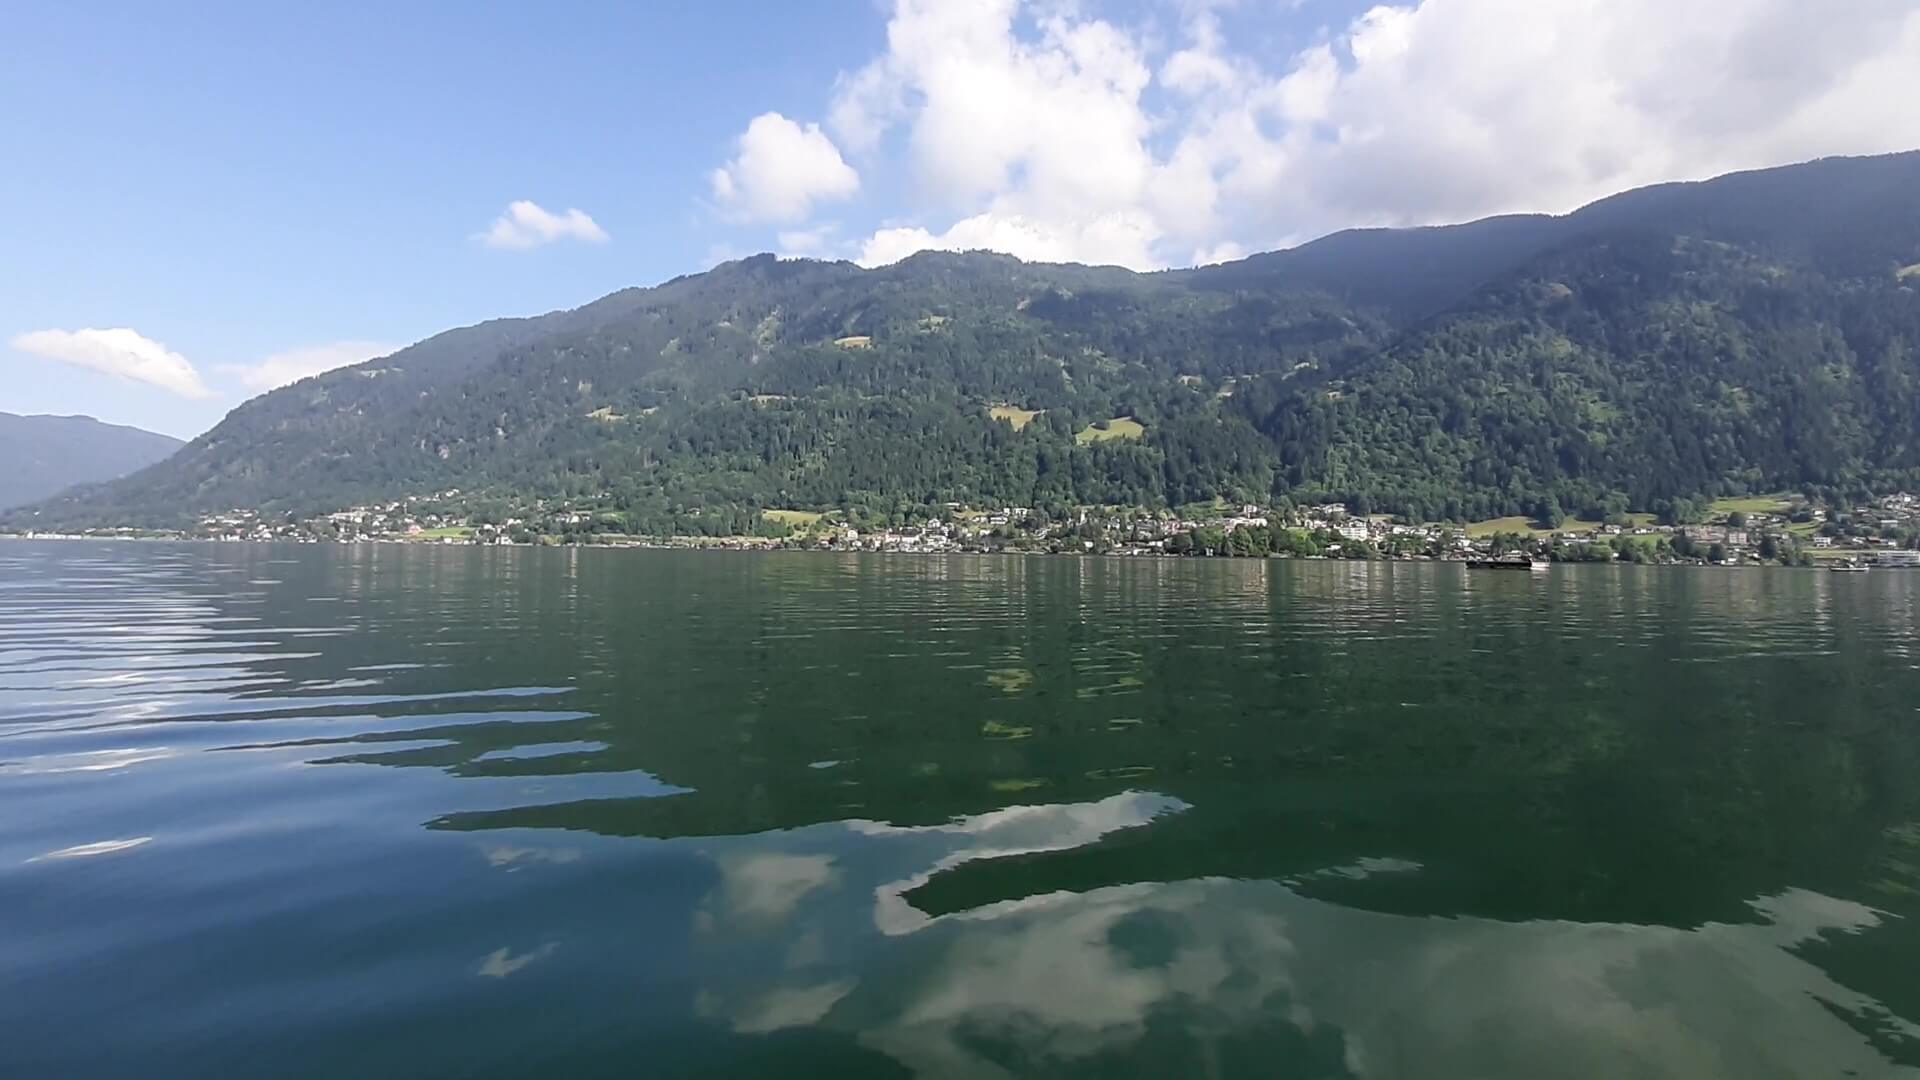 Kayaking the lakes of Austria - Sliva